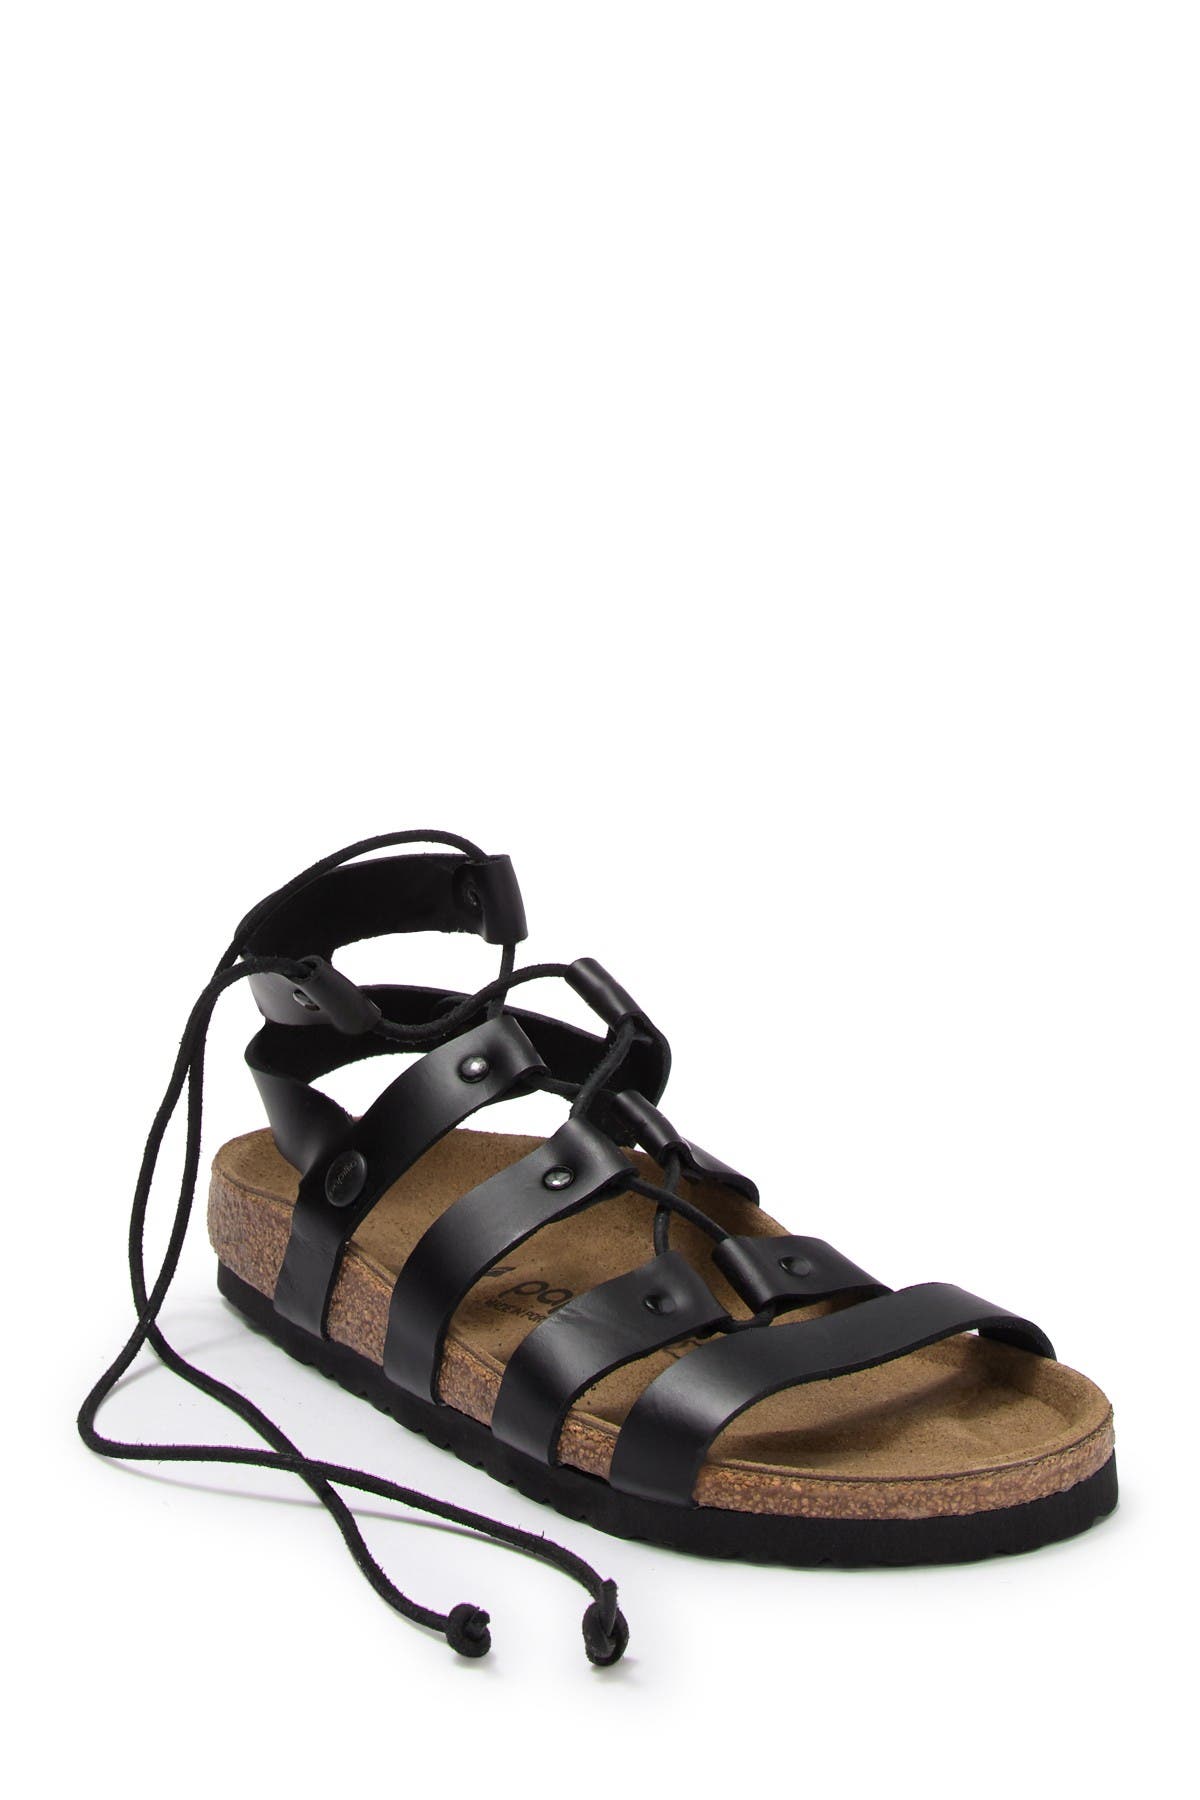 birkenstock cleo gladiator sandal